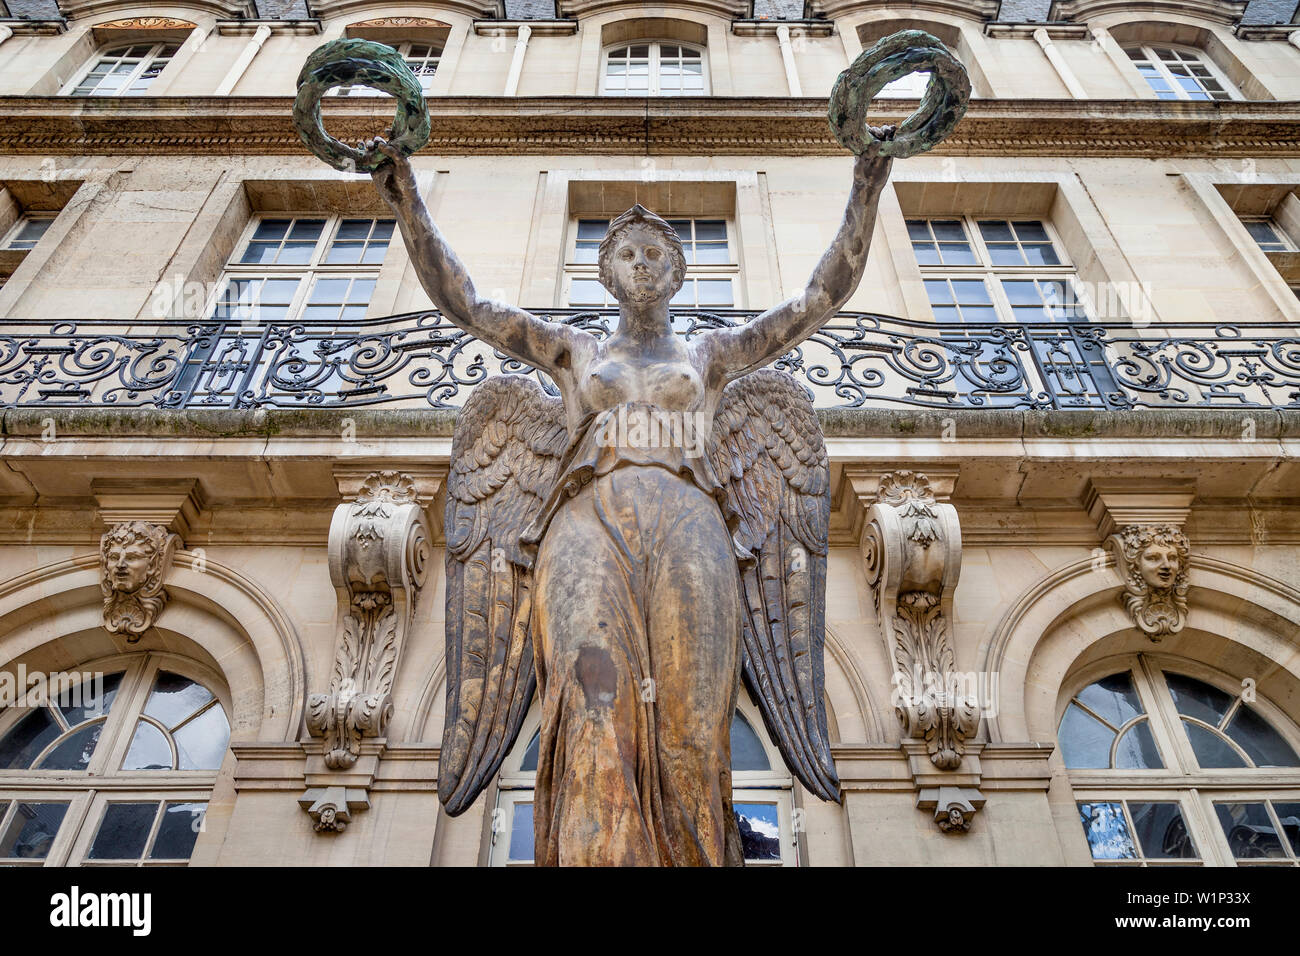 Louis Boizot Simon's 'Victoria' Escultura en el jardín del Musée Carnavalet - ahora el Museo de la historia de Francia, Marais, París Francia Foto de stock